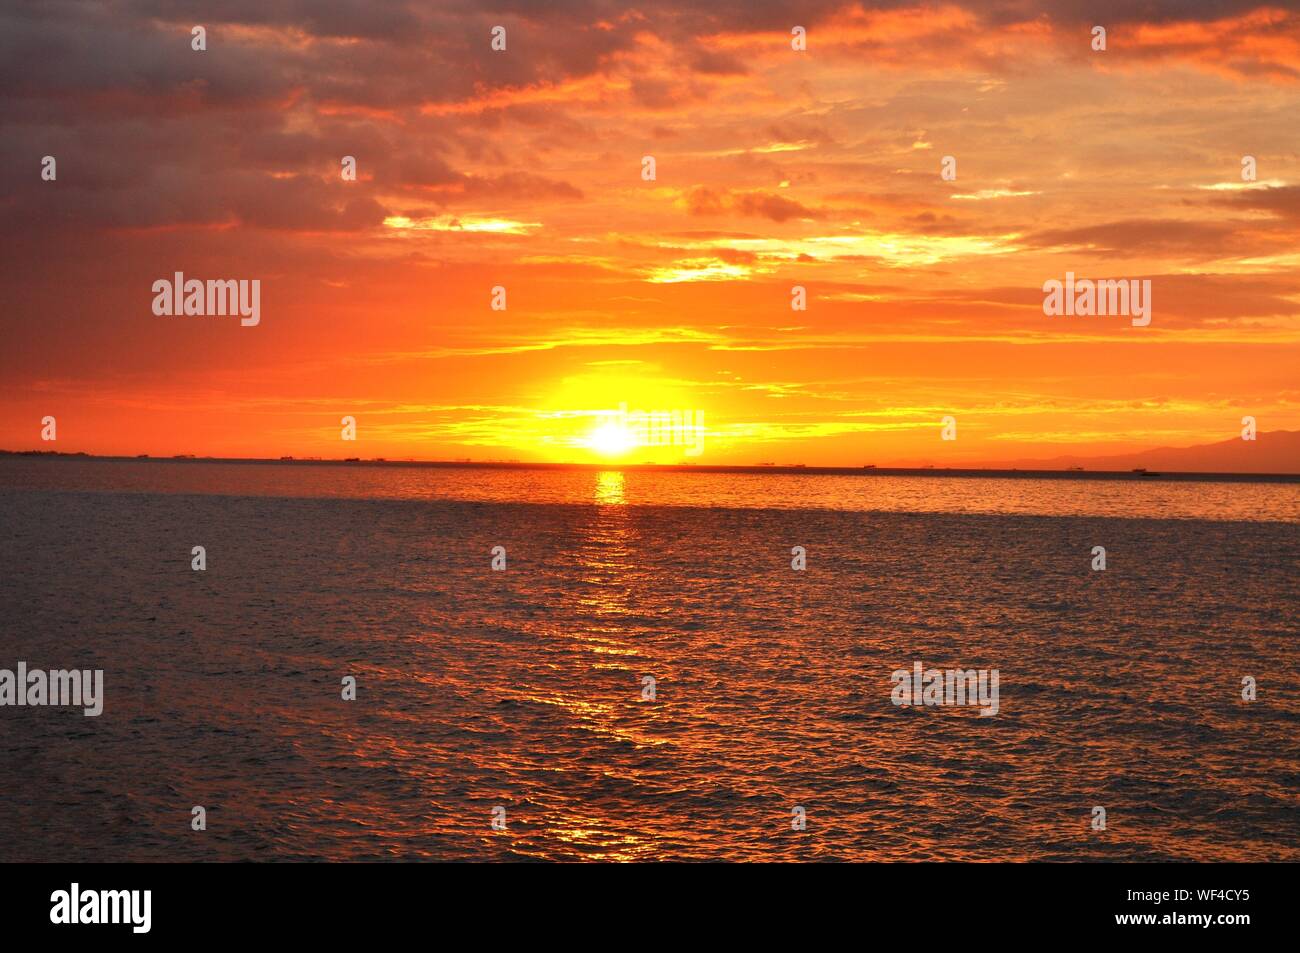 Idyllic Shot Of Manila Bay Against Orange Sunset Sky Stock Photo